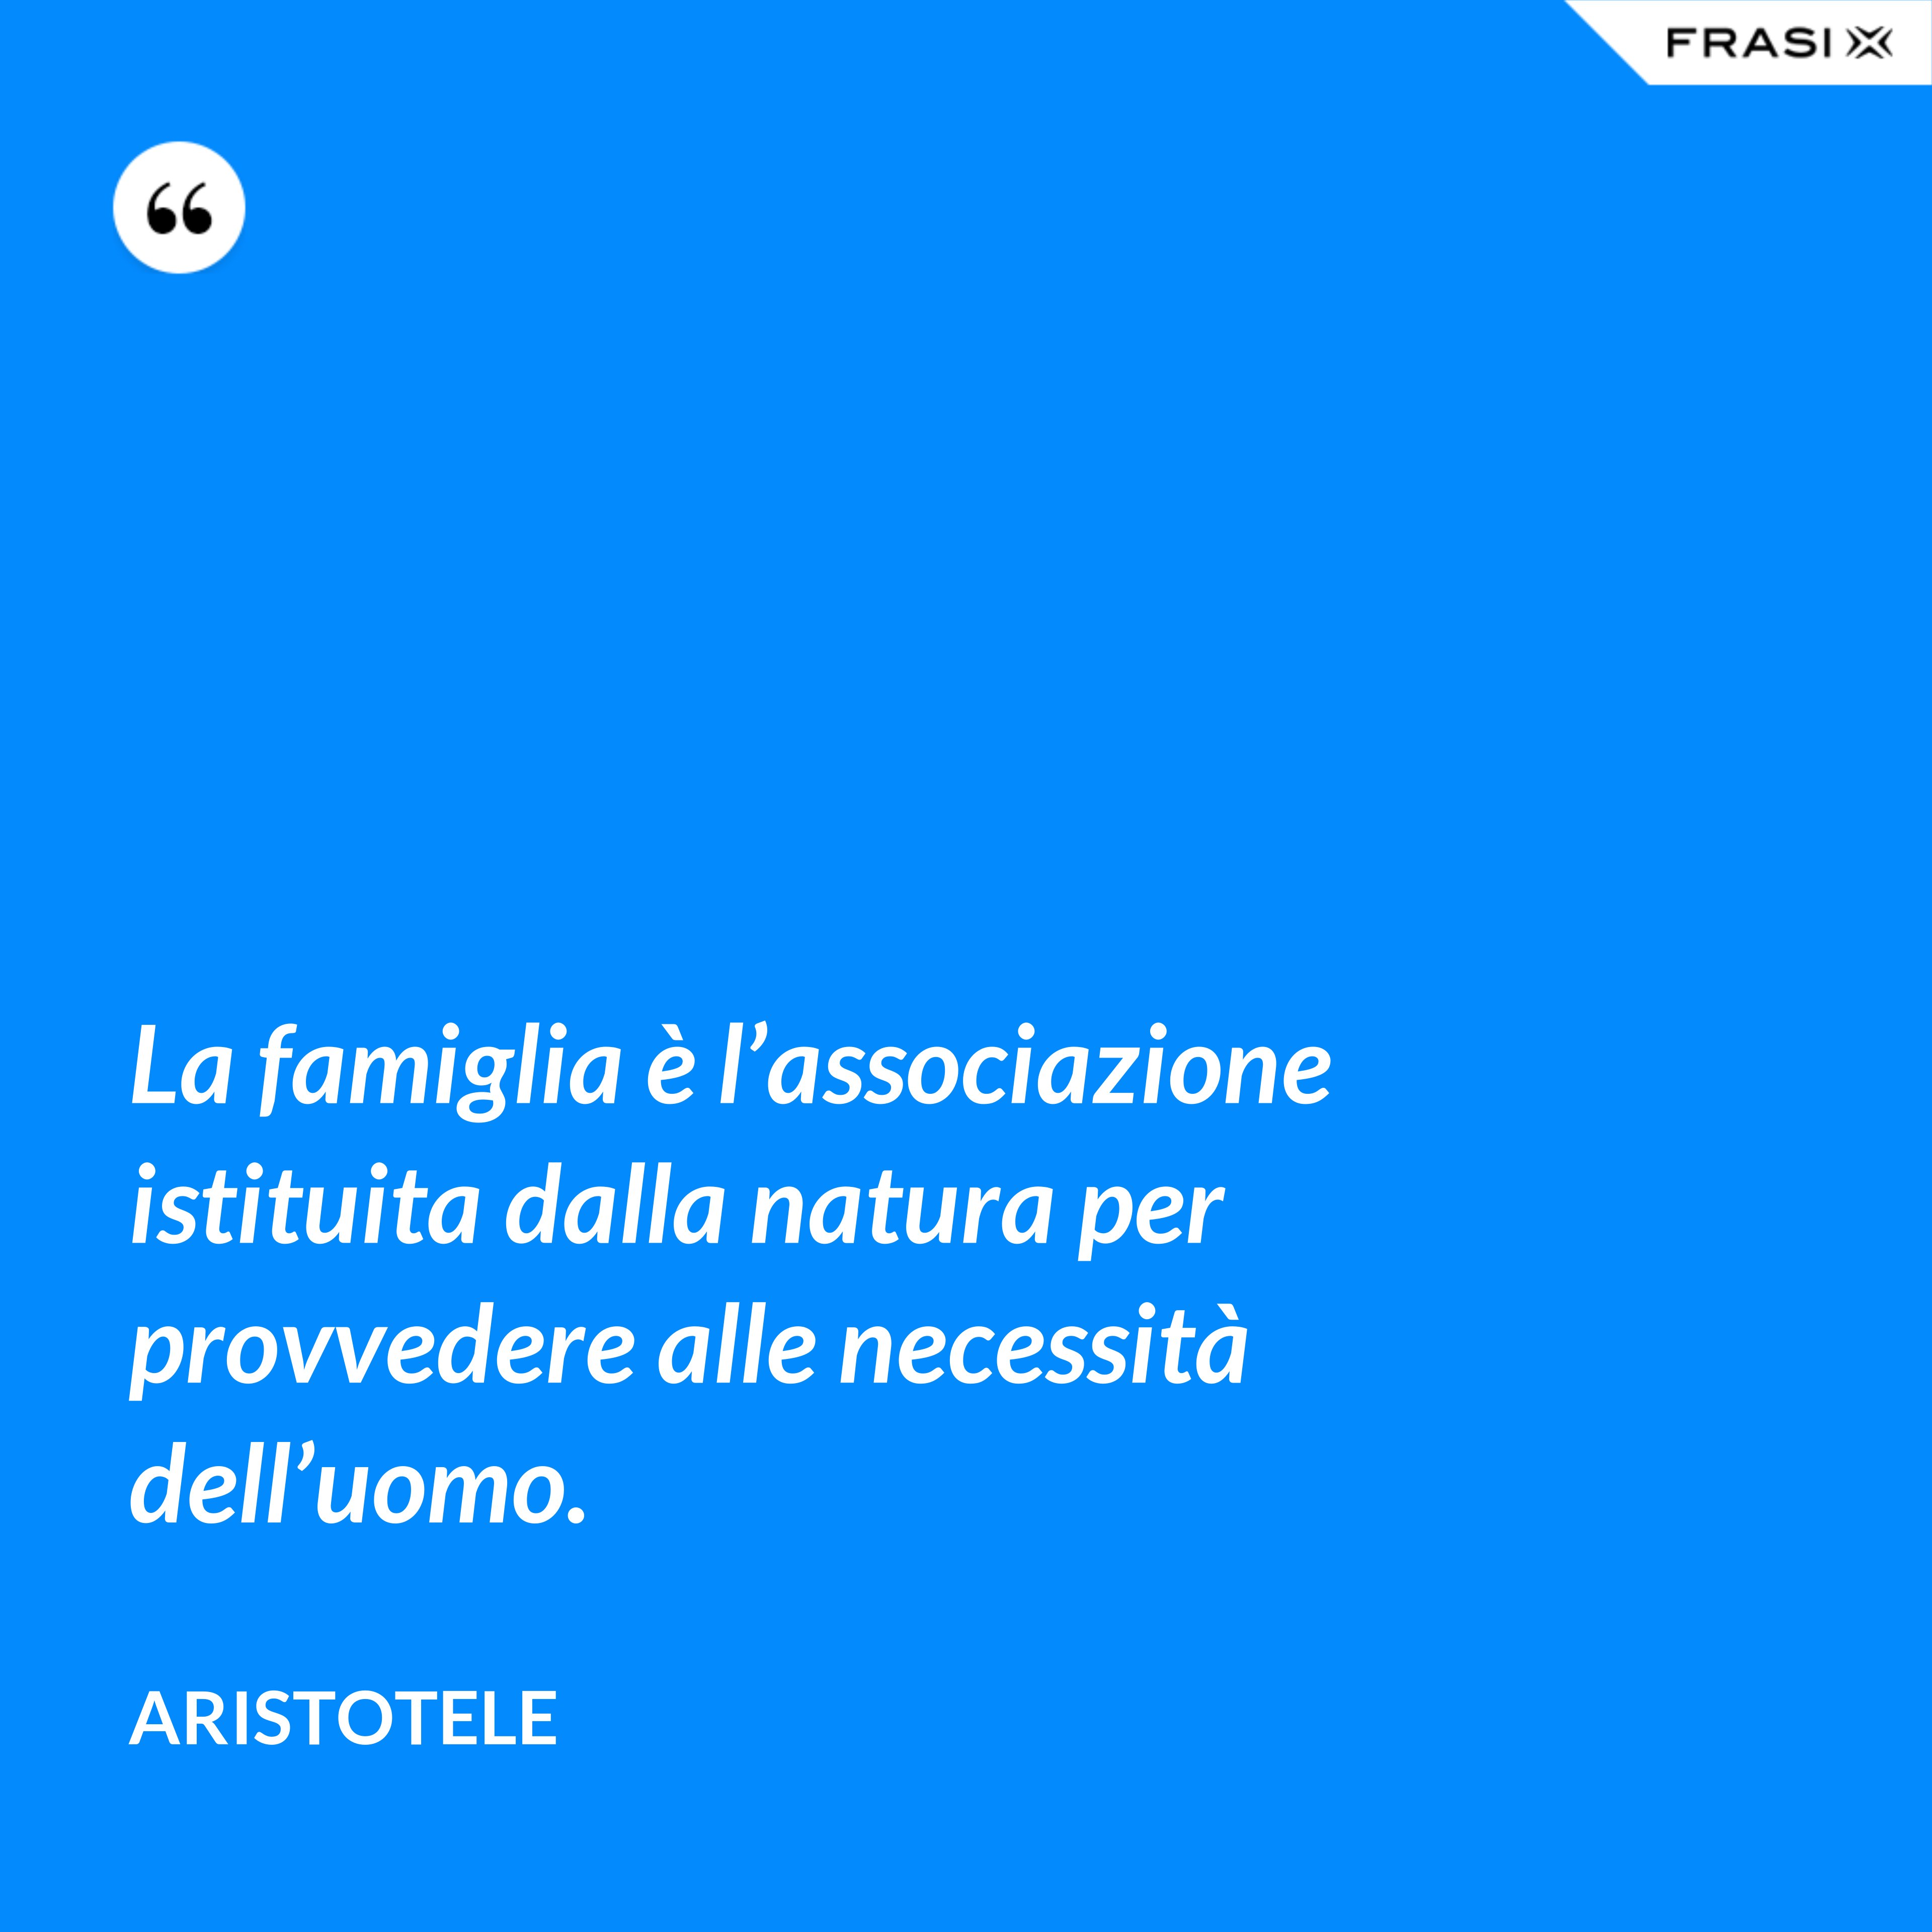 La famiglia è l’associazione istituita dalla natura per provvedere alle necessità dell’uomo. - Aristotele